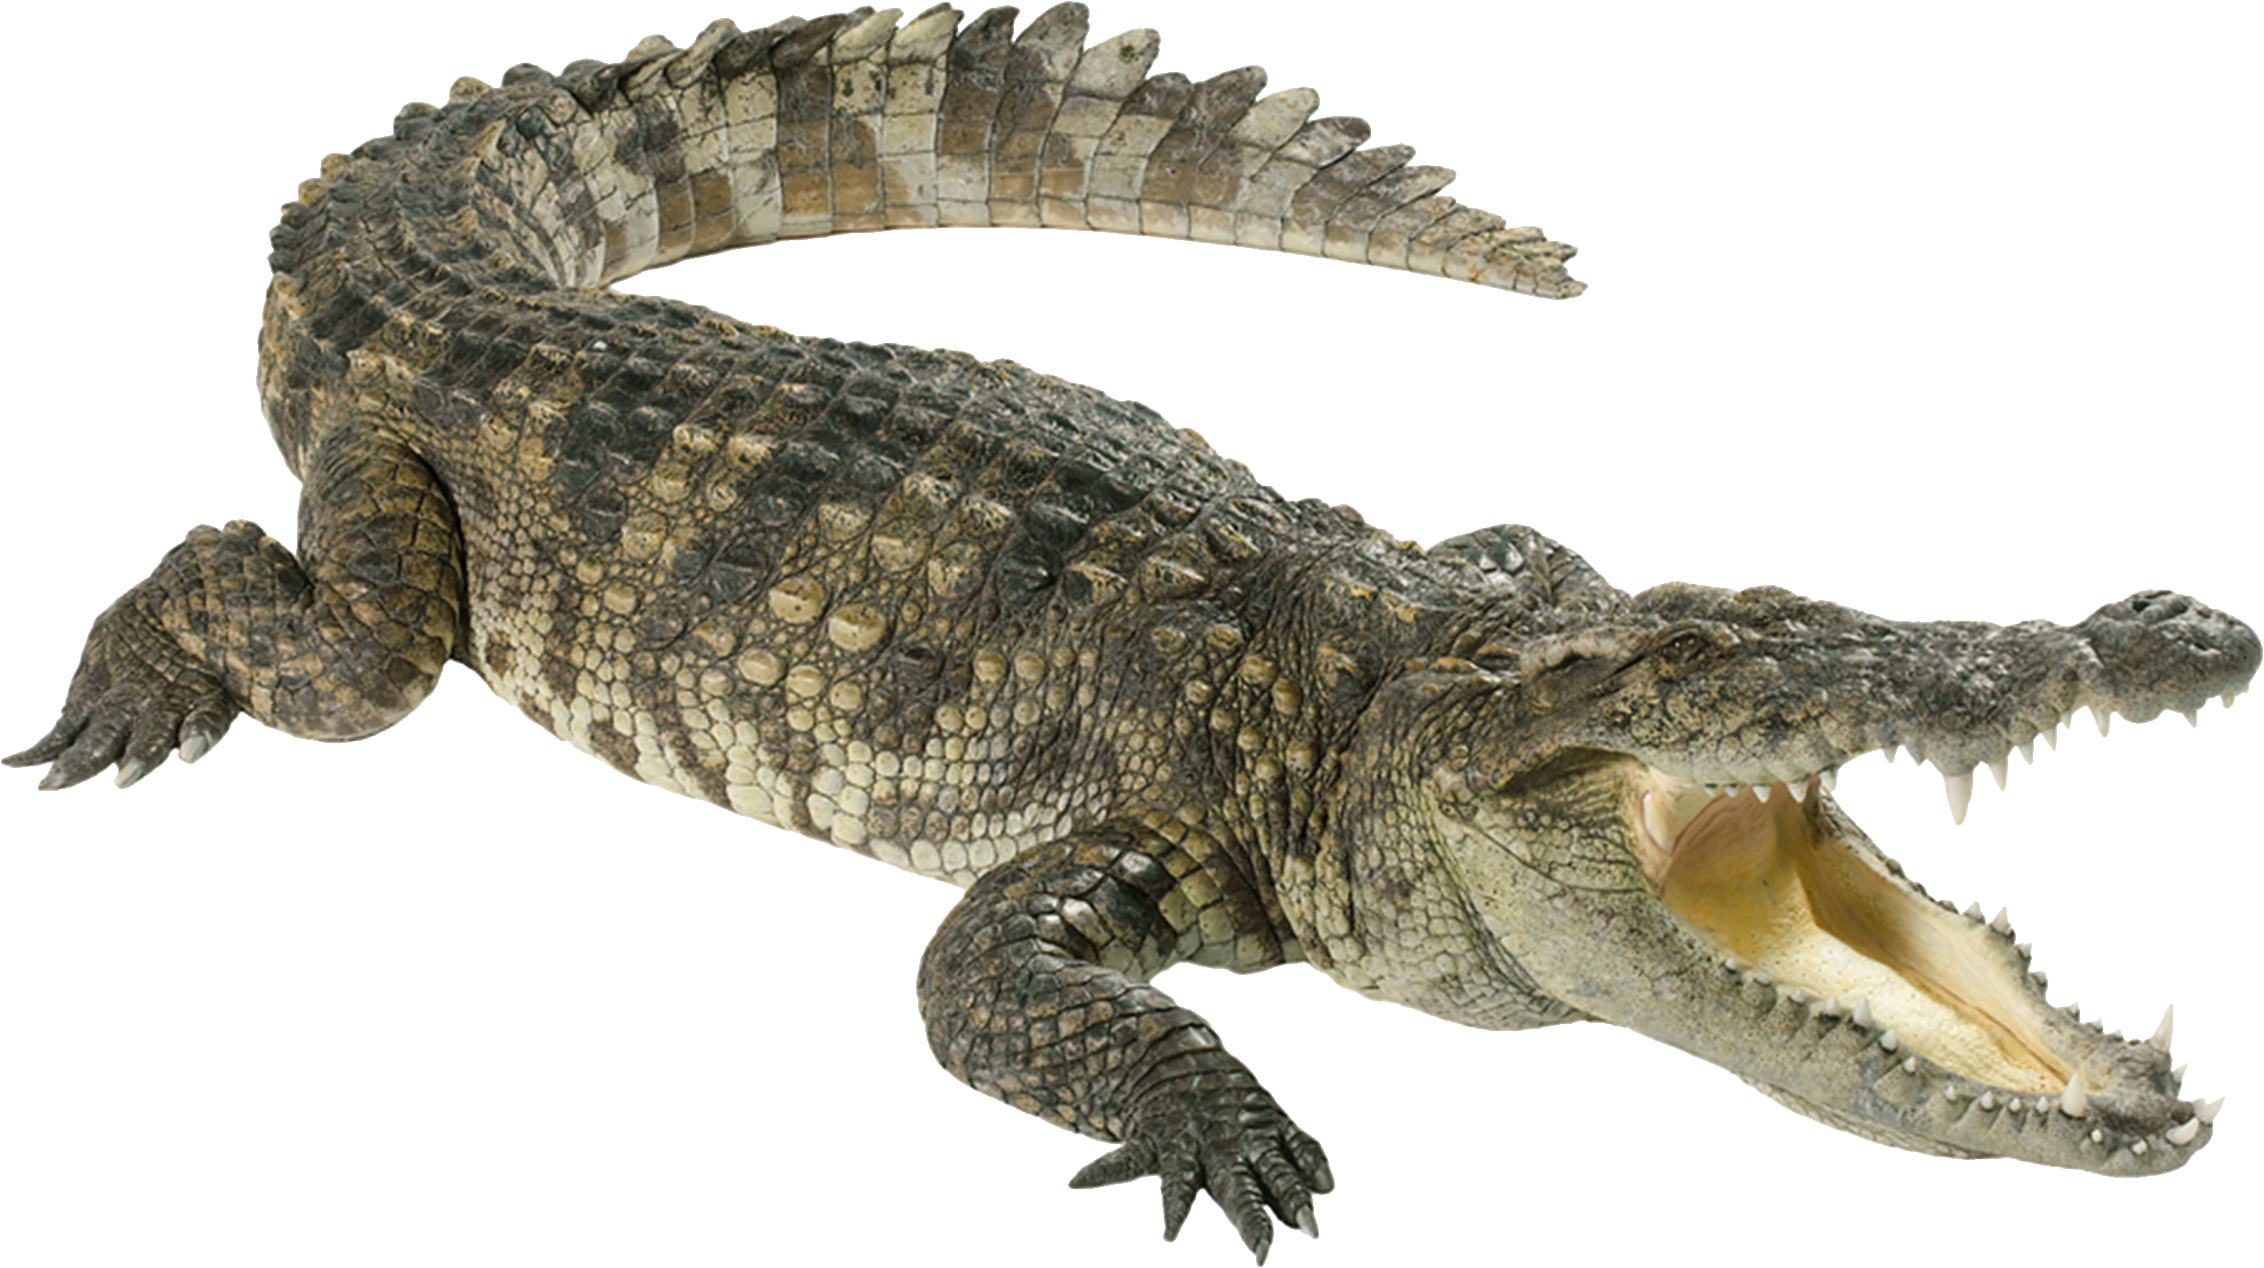 Crocodile 07 by Crocodile Tai